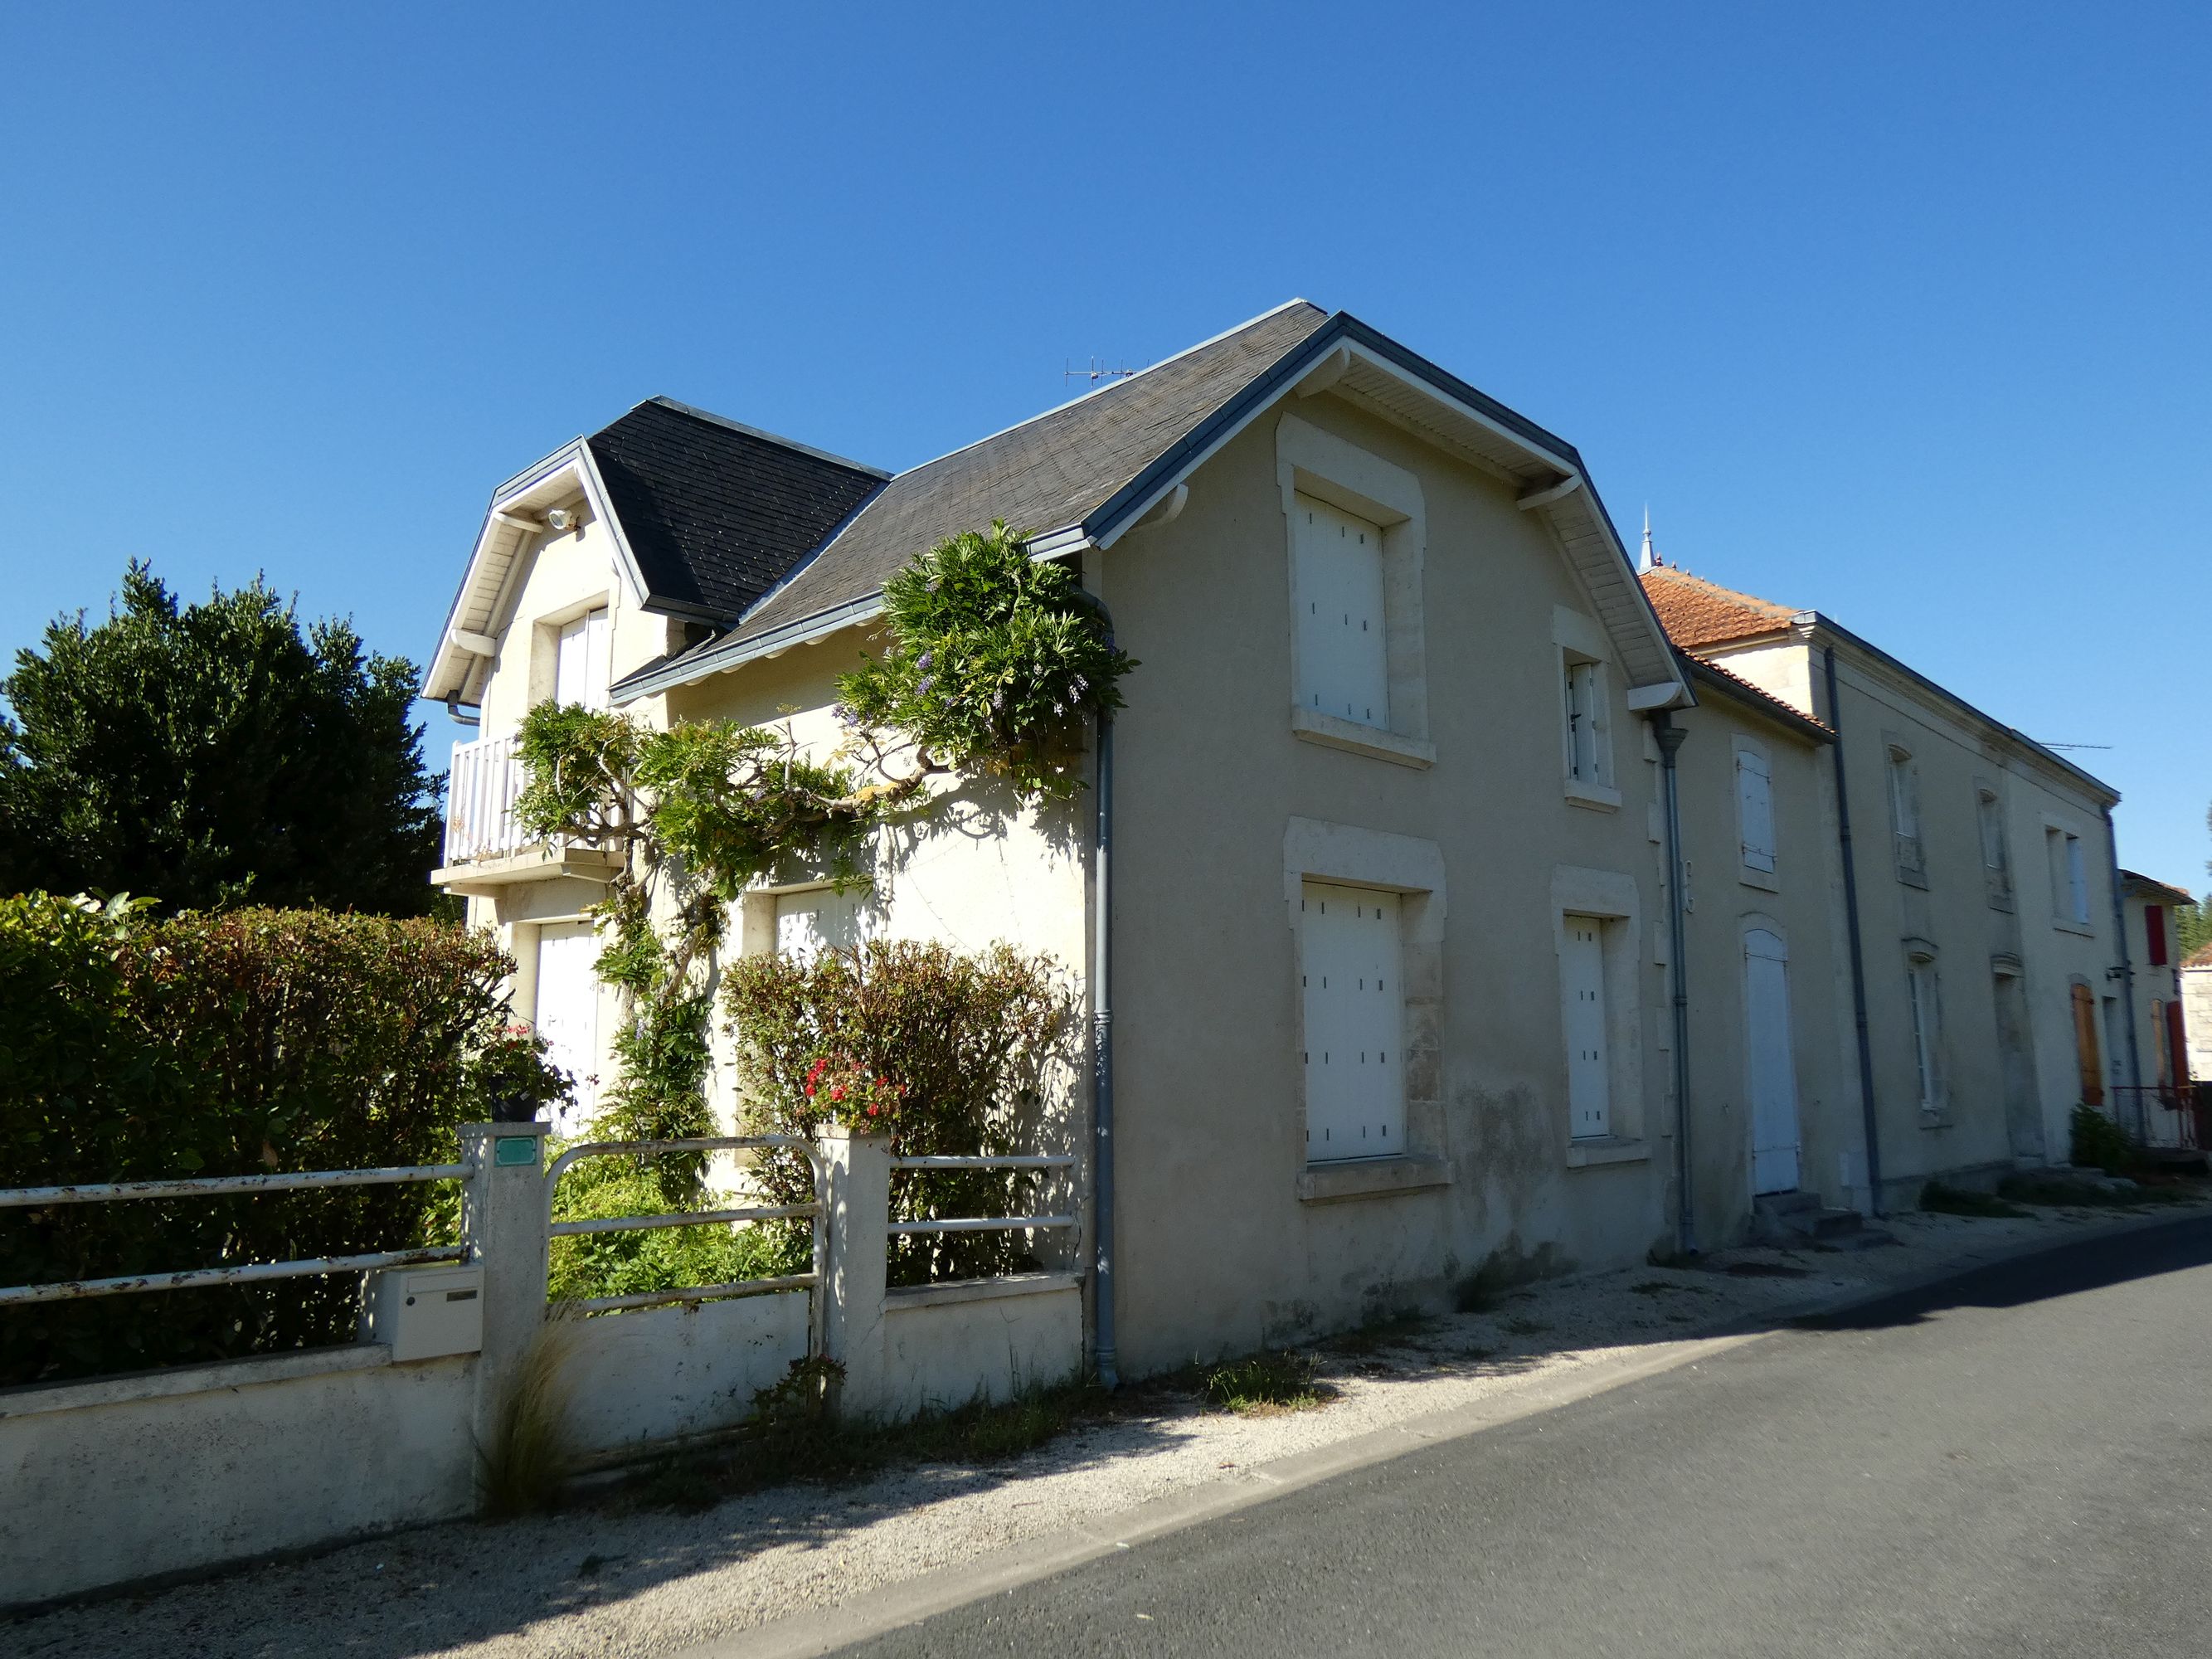 Maisons, fermes : l'habitat au Mazeau